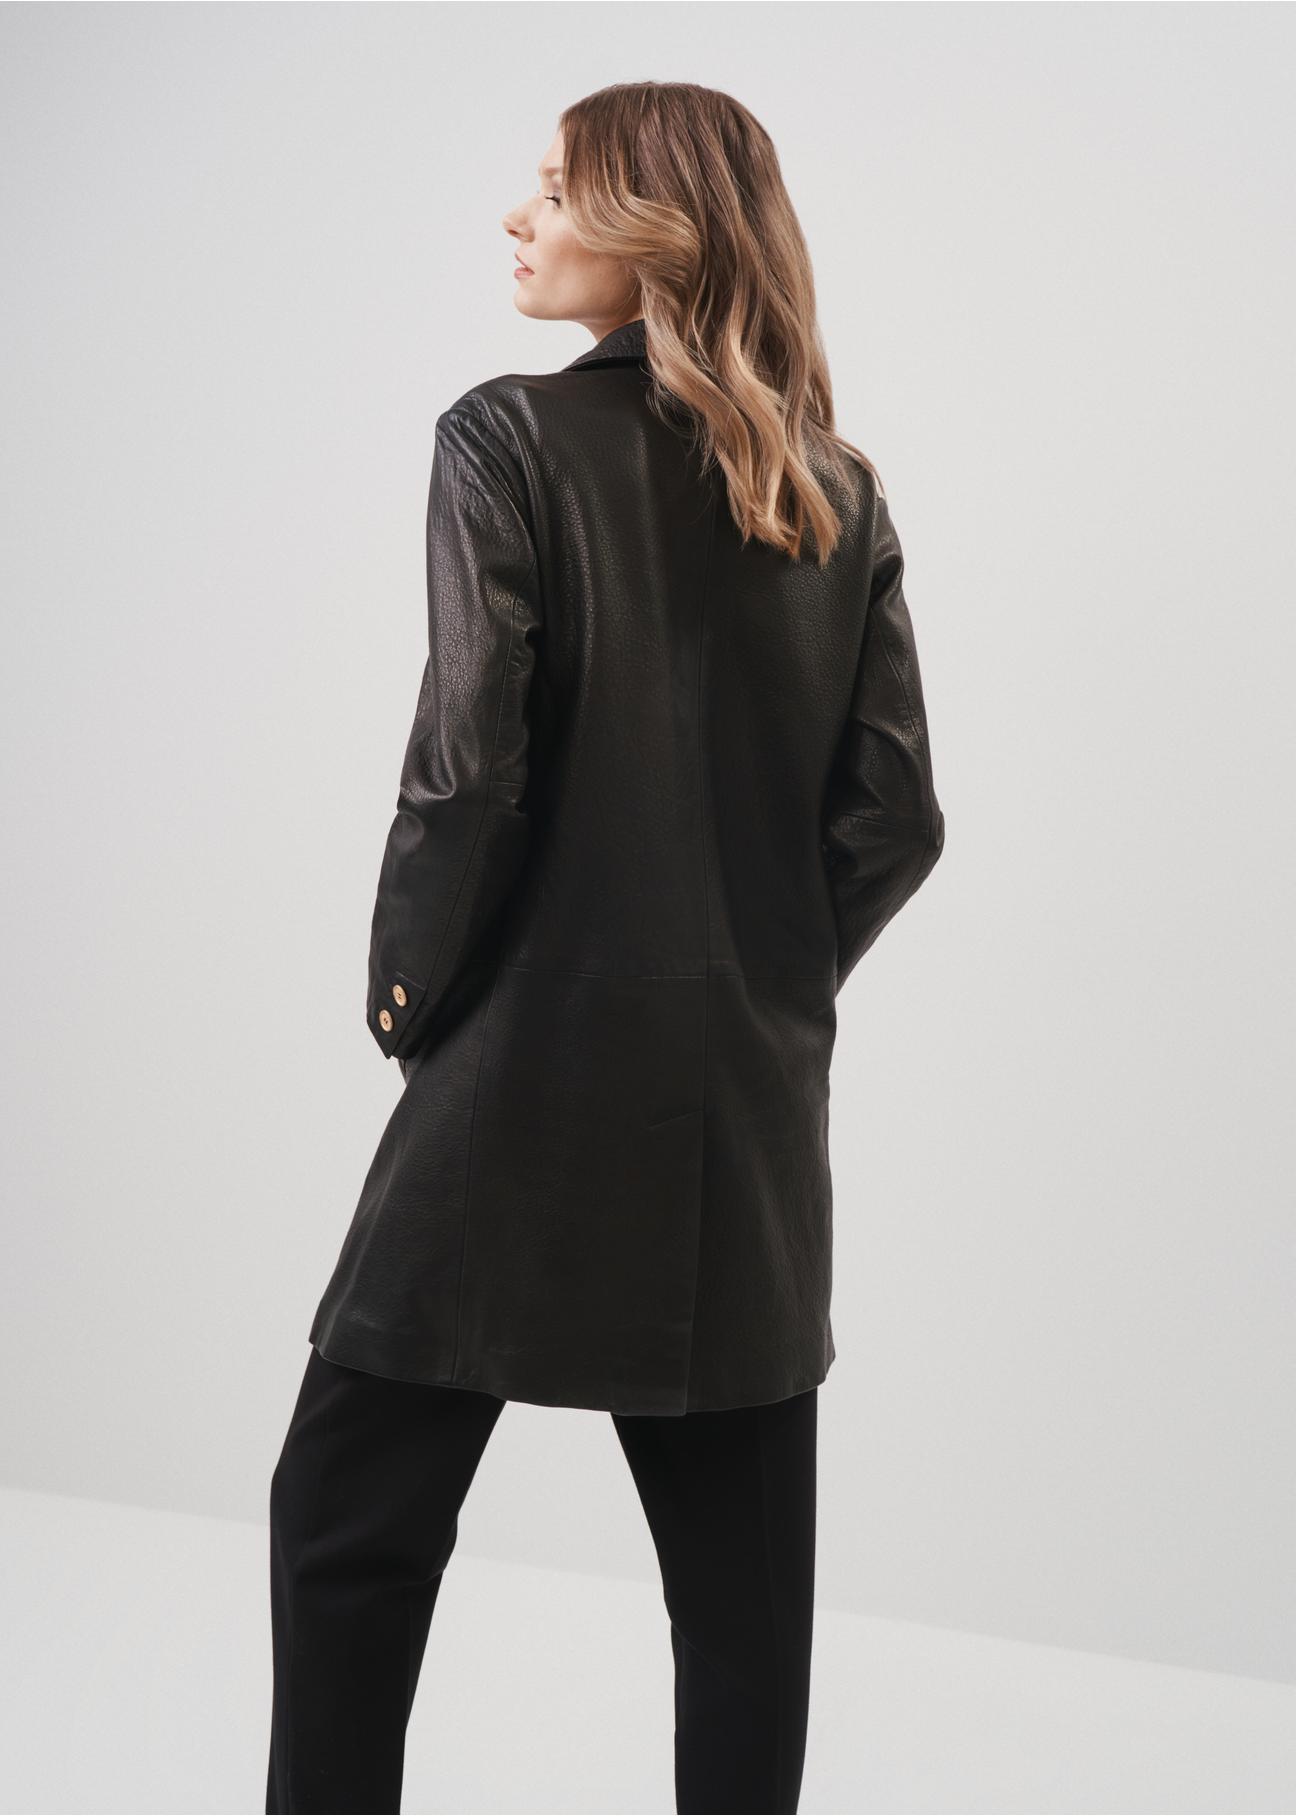 Skórzana kurtka damska w formie płaszcza KURDS-0443-1313(Z23)